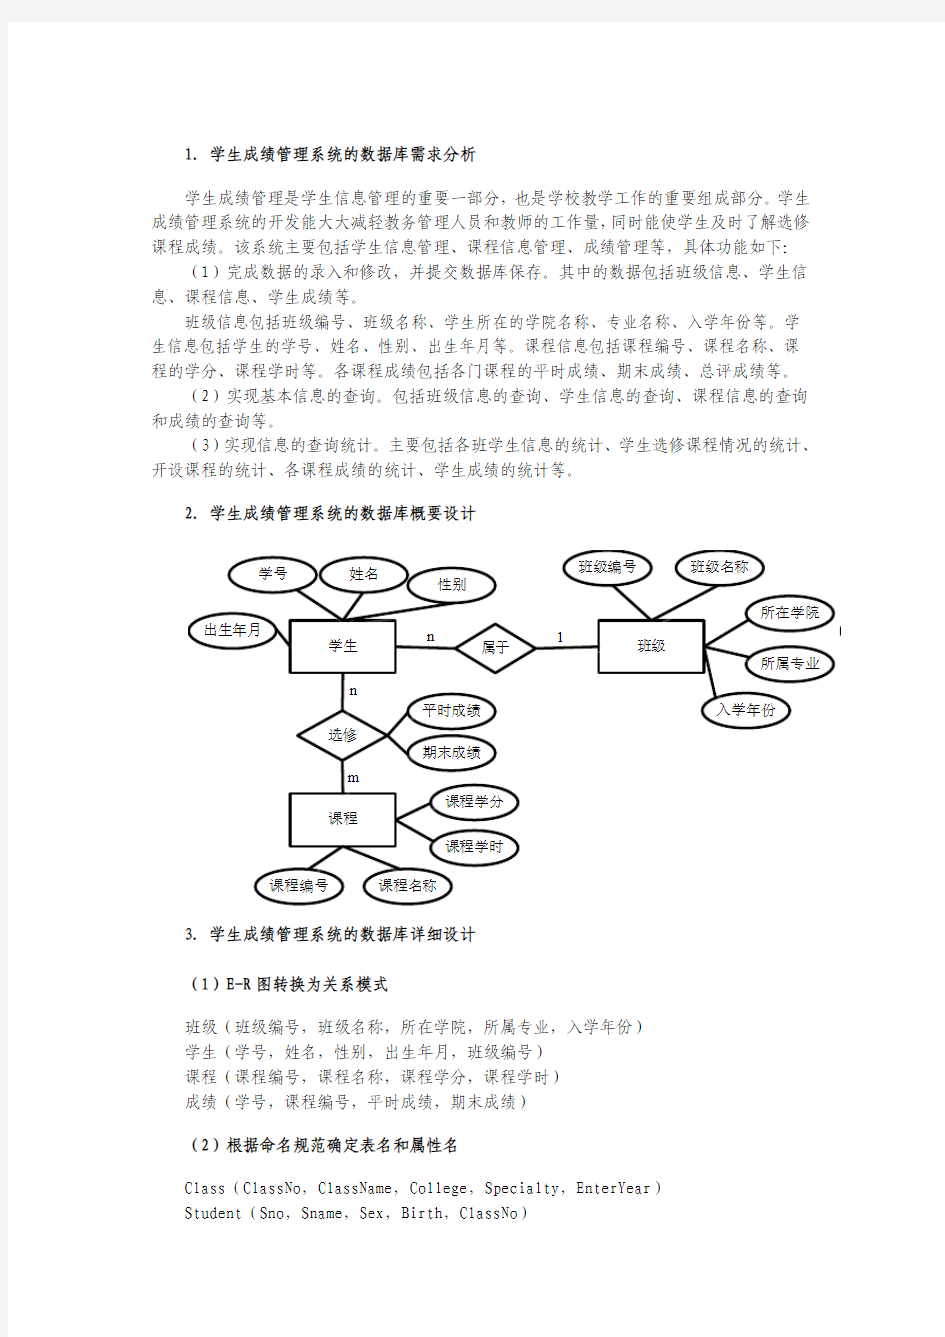 “学生信息管理系统”数据库设计(全)